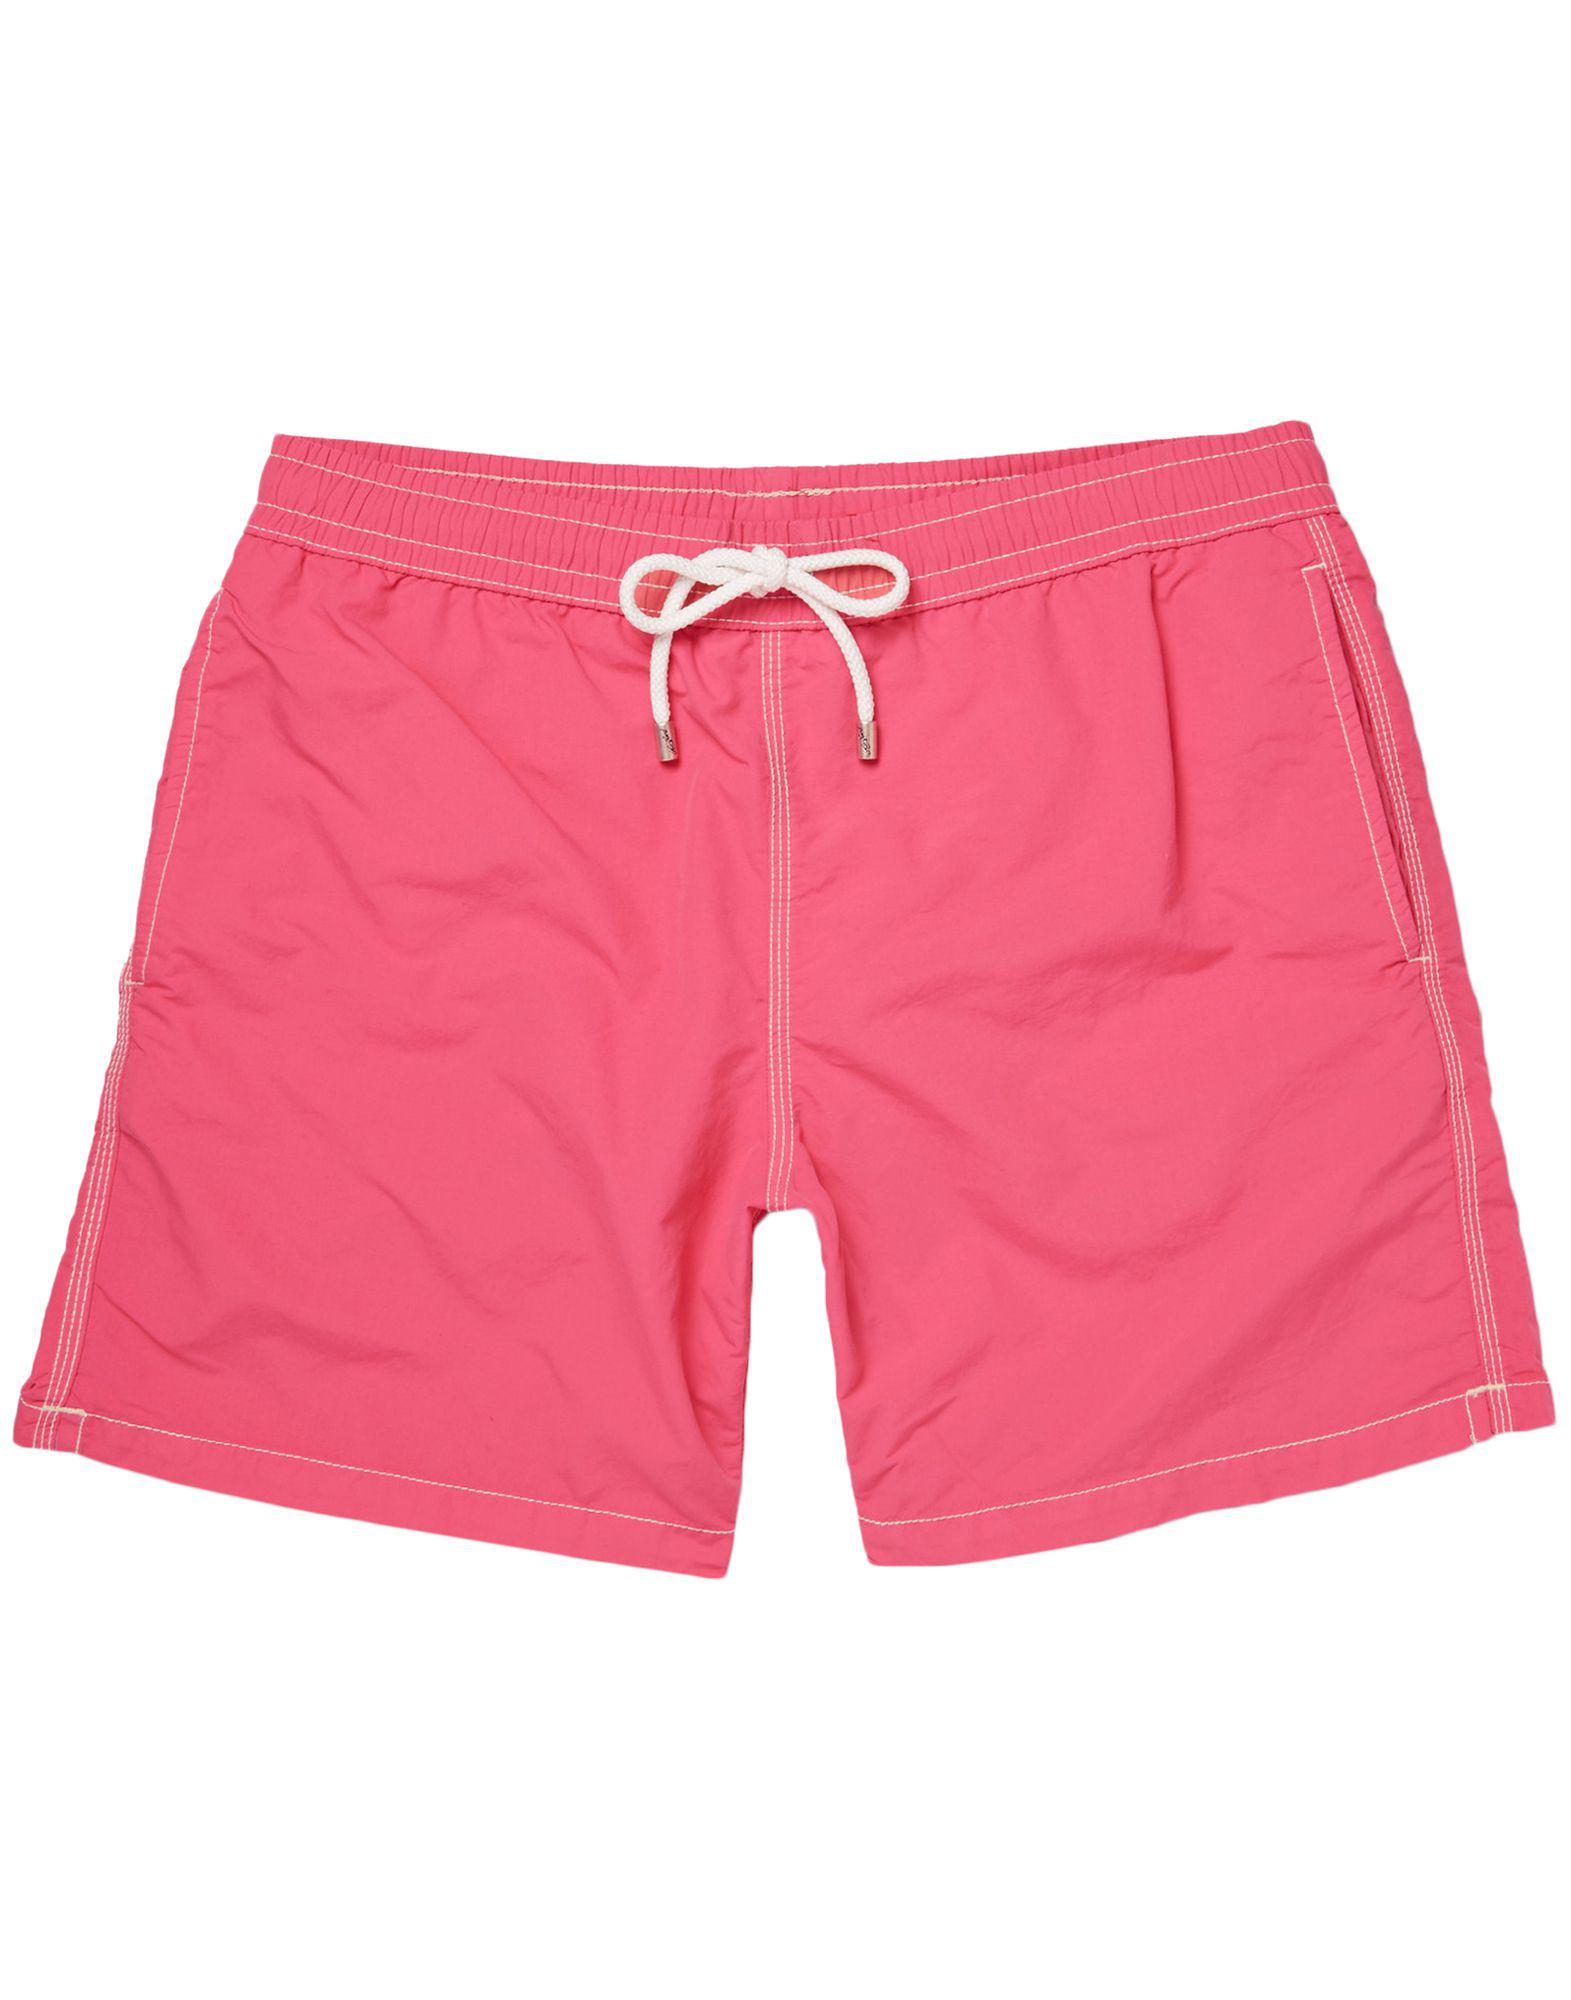 Hartford Swim Trunks in Pink for Men - Lyst